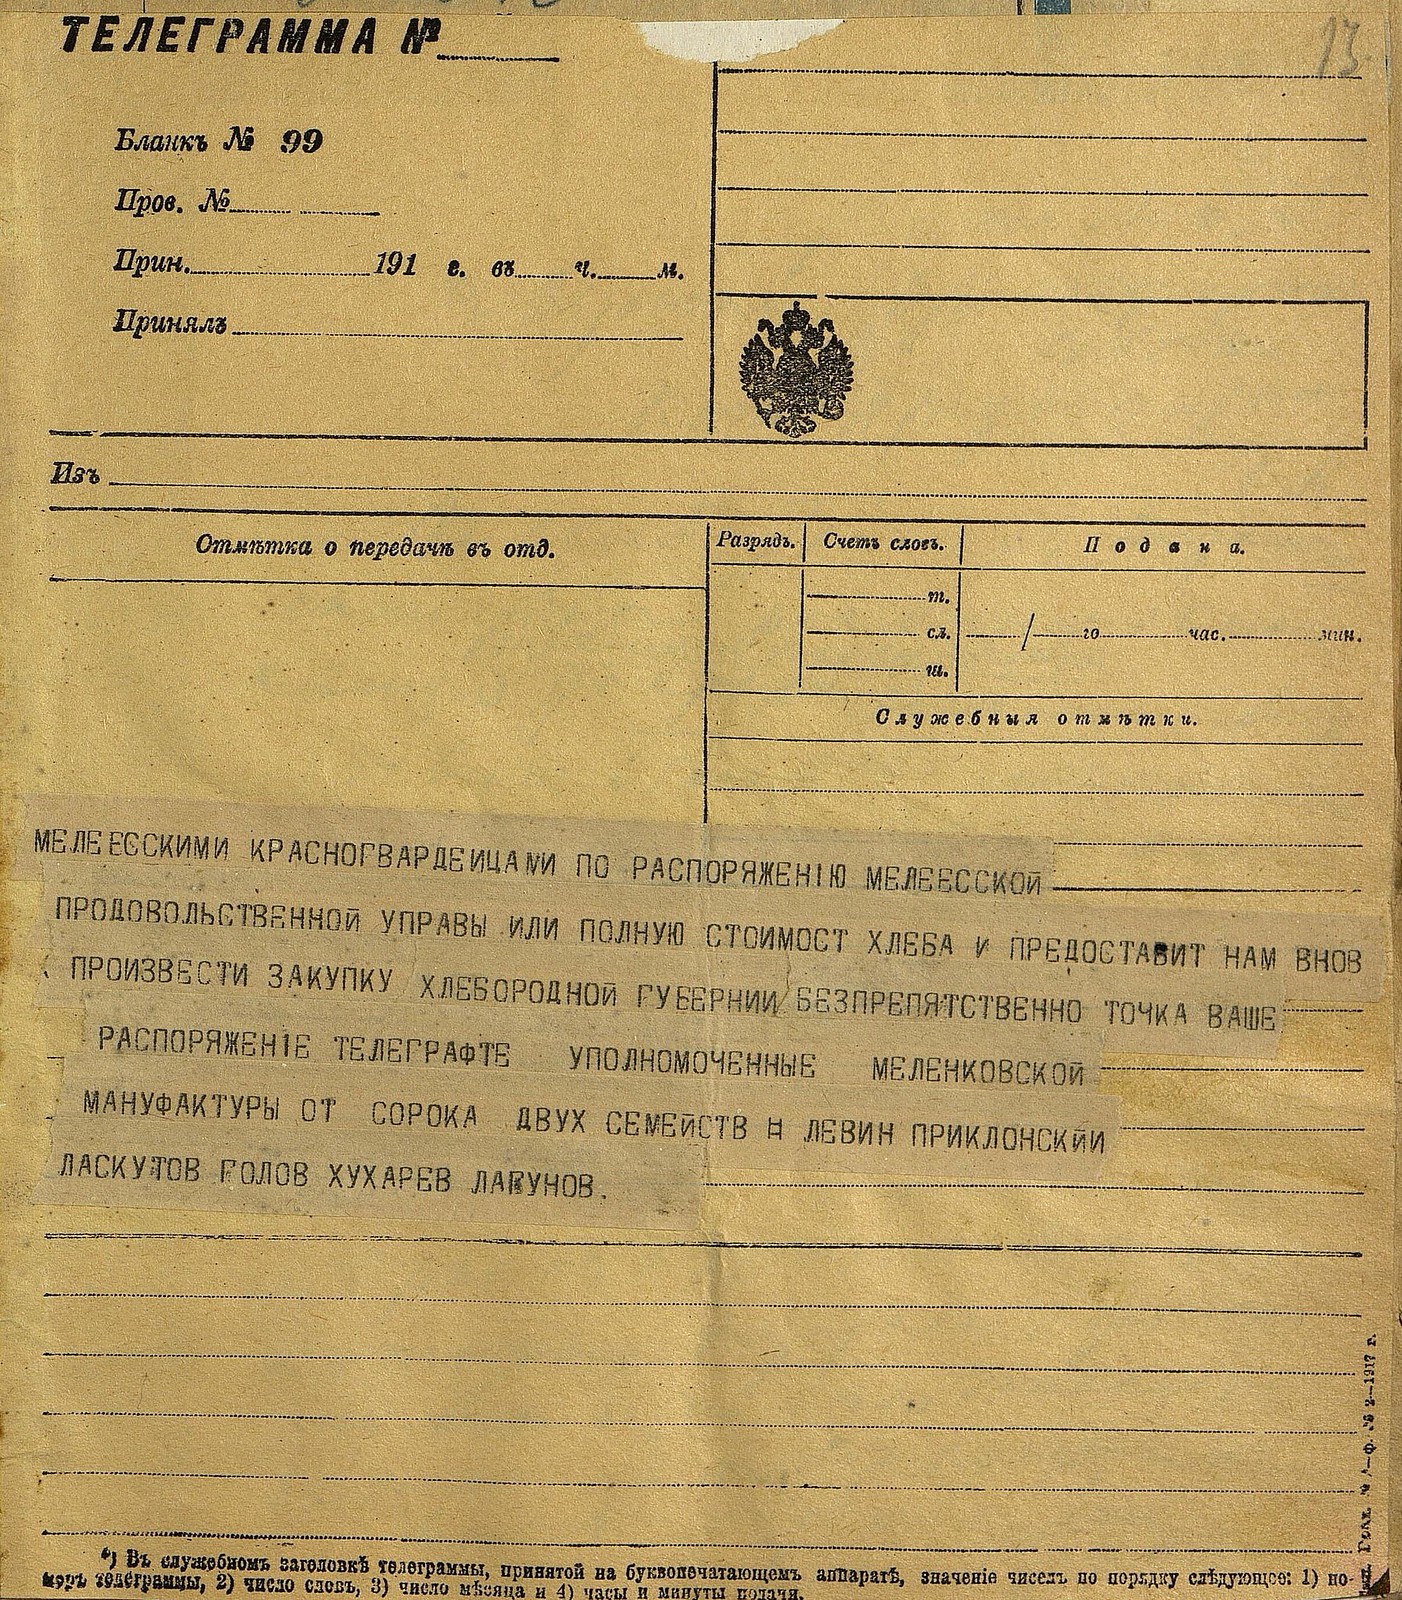 Грабёж населения в годы военного коммунизма в телеграмме рабочих Троцкому 